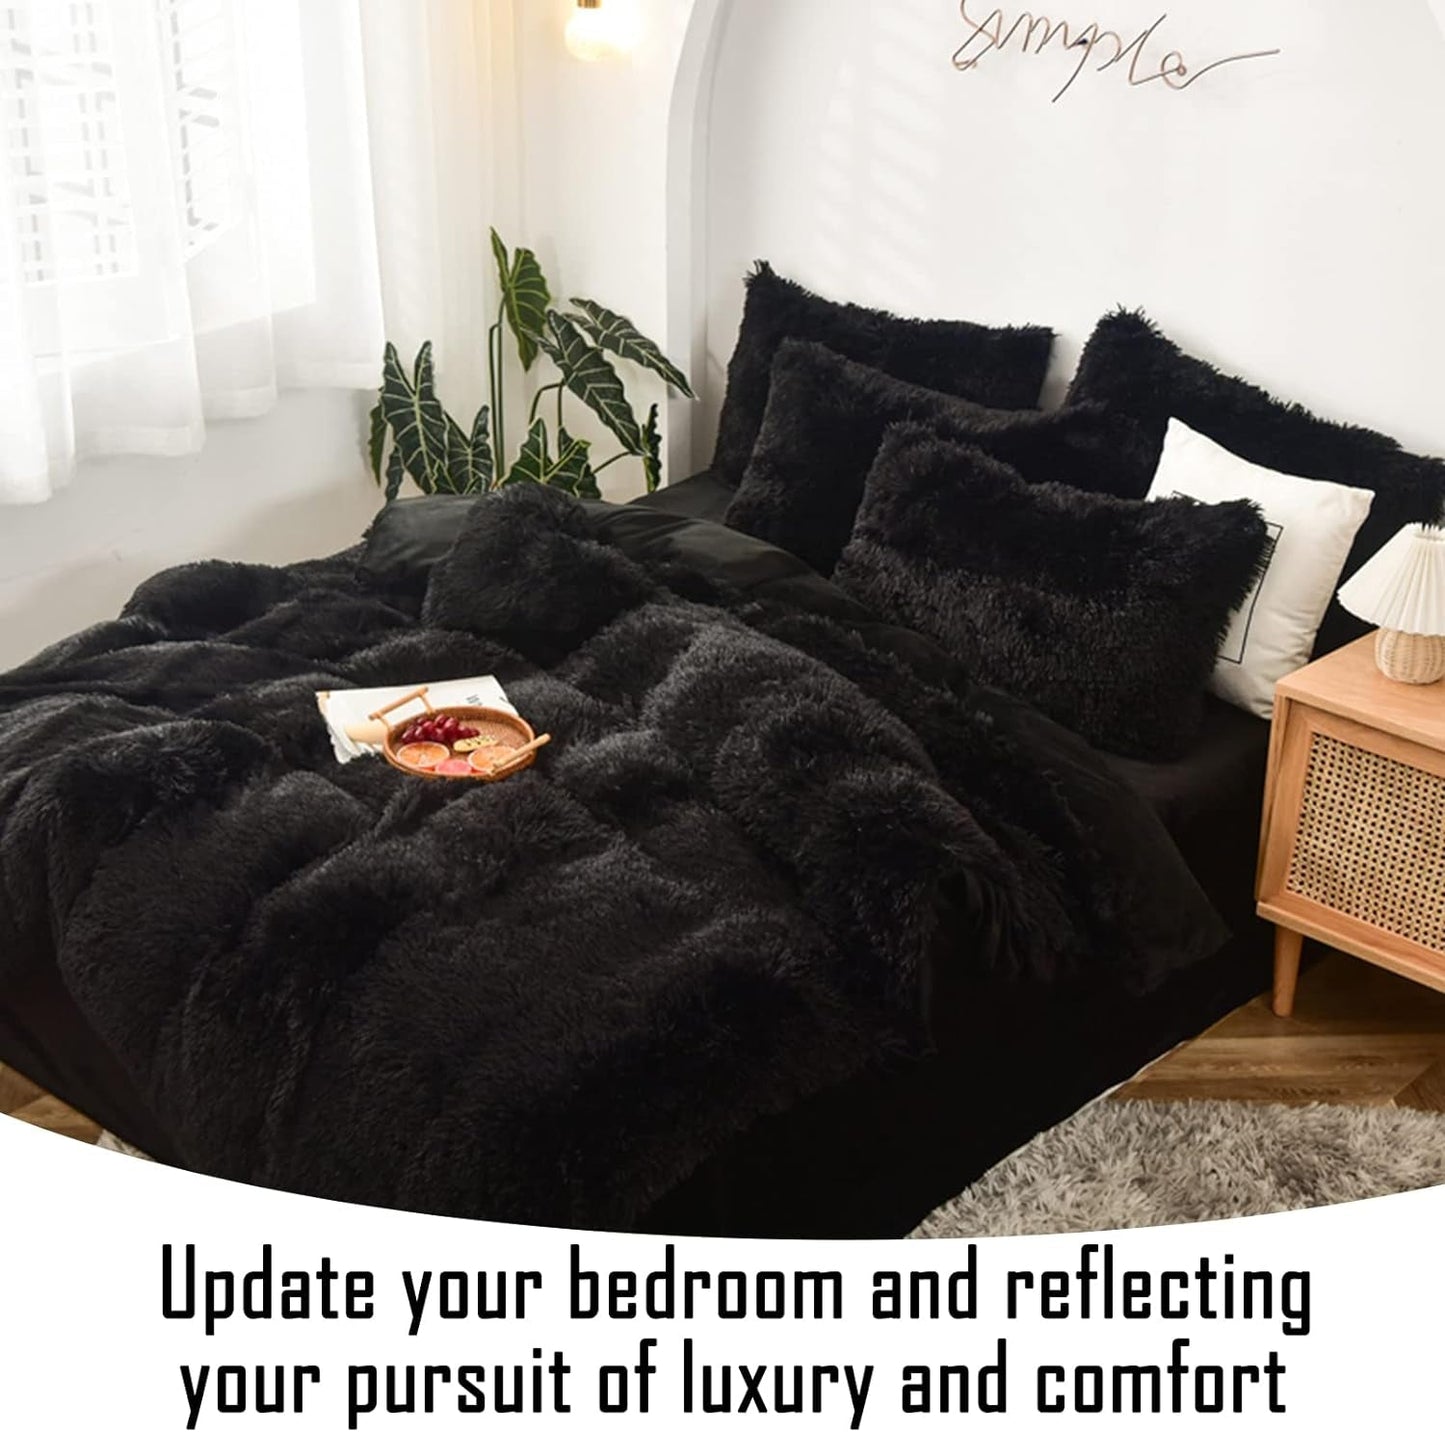 Morromorn Fluffy Comforter Duvet Cover Set, 5 Pcs Bedding Sets Faux Fur Plush Velvet Shaggy Ultra Soft Luxury for King Cal King Size Black